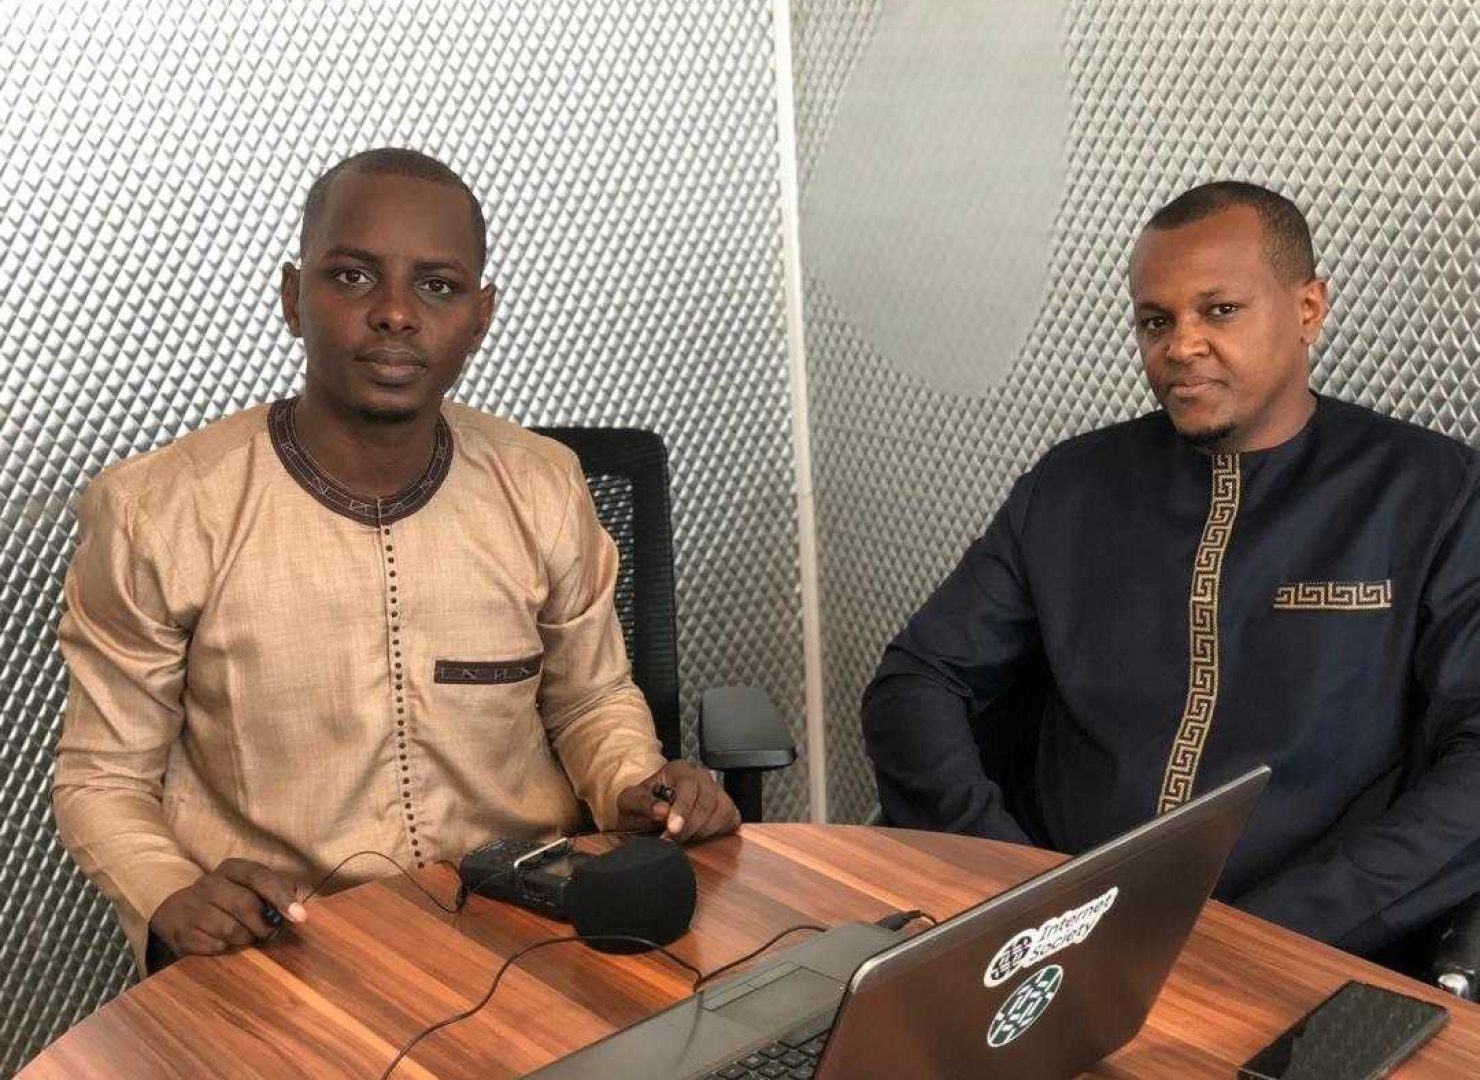 Avec Bassirou Bâ, Coordonnateur du PTN du Sénégal